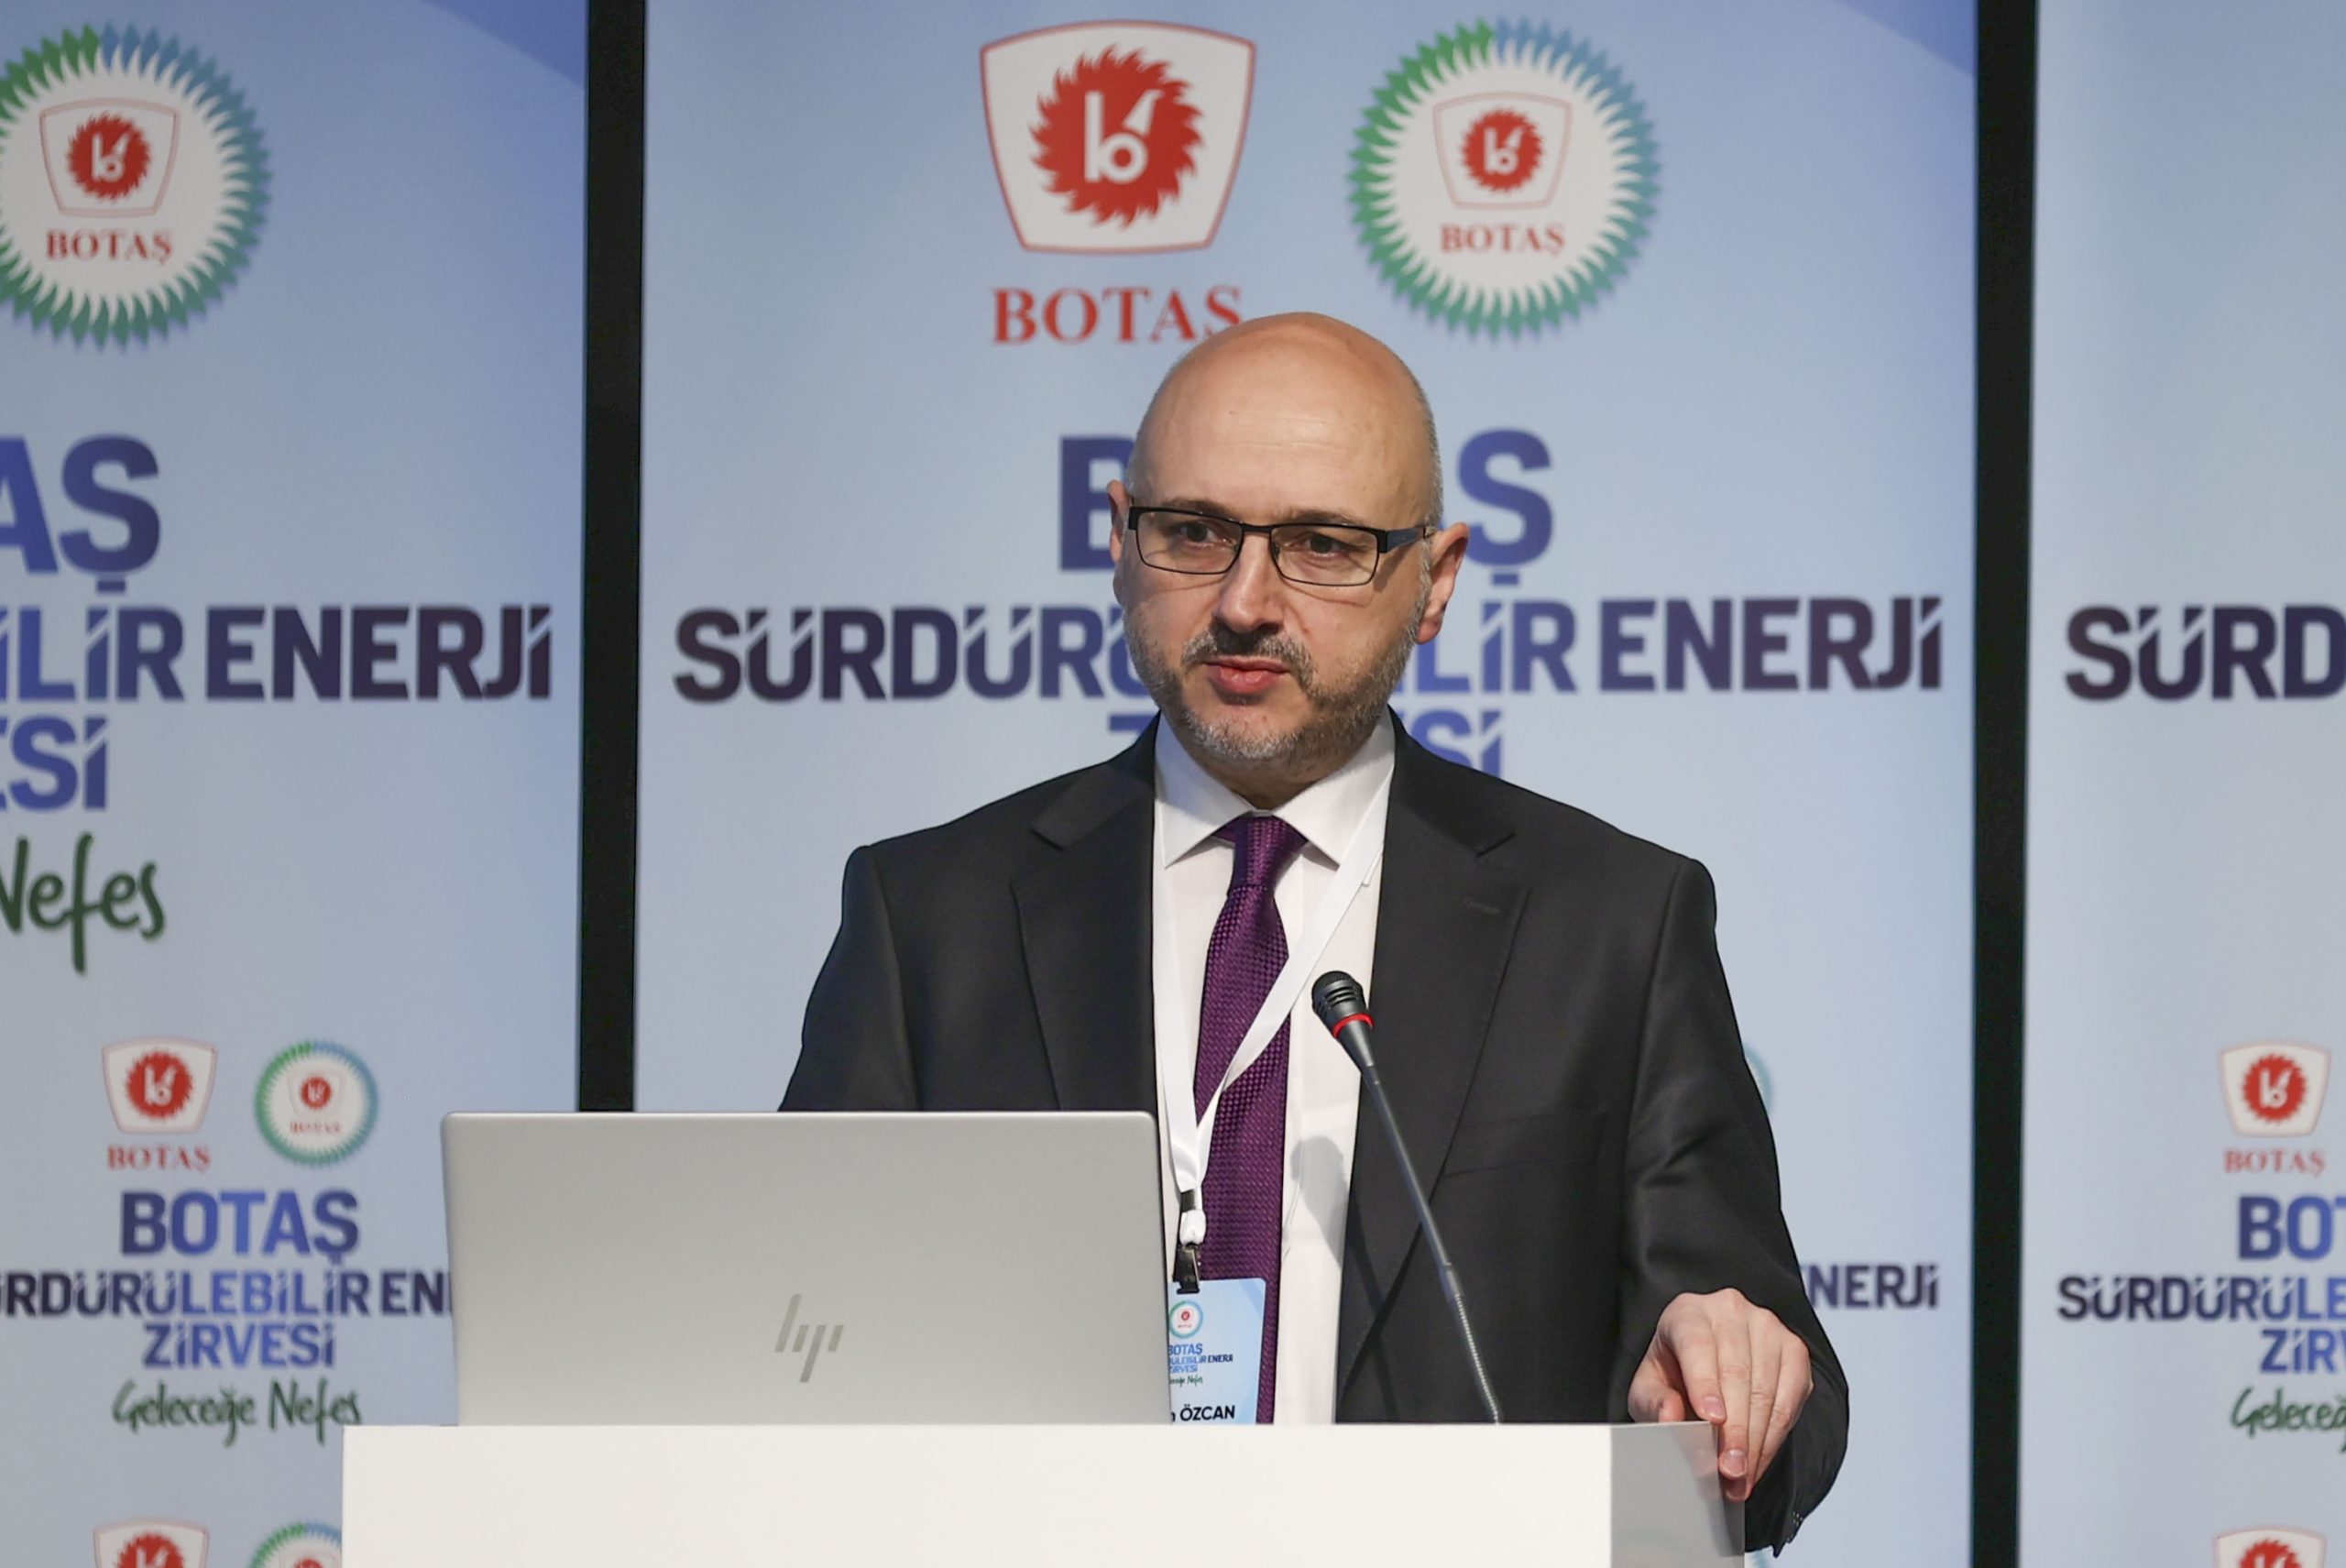 BOTAŞ Genel Müdürü Özcan, doğal gazda devlet desteğinin yüzde 70 seviyesinde devam ettiğini bildirdi